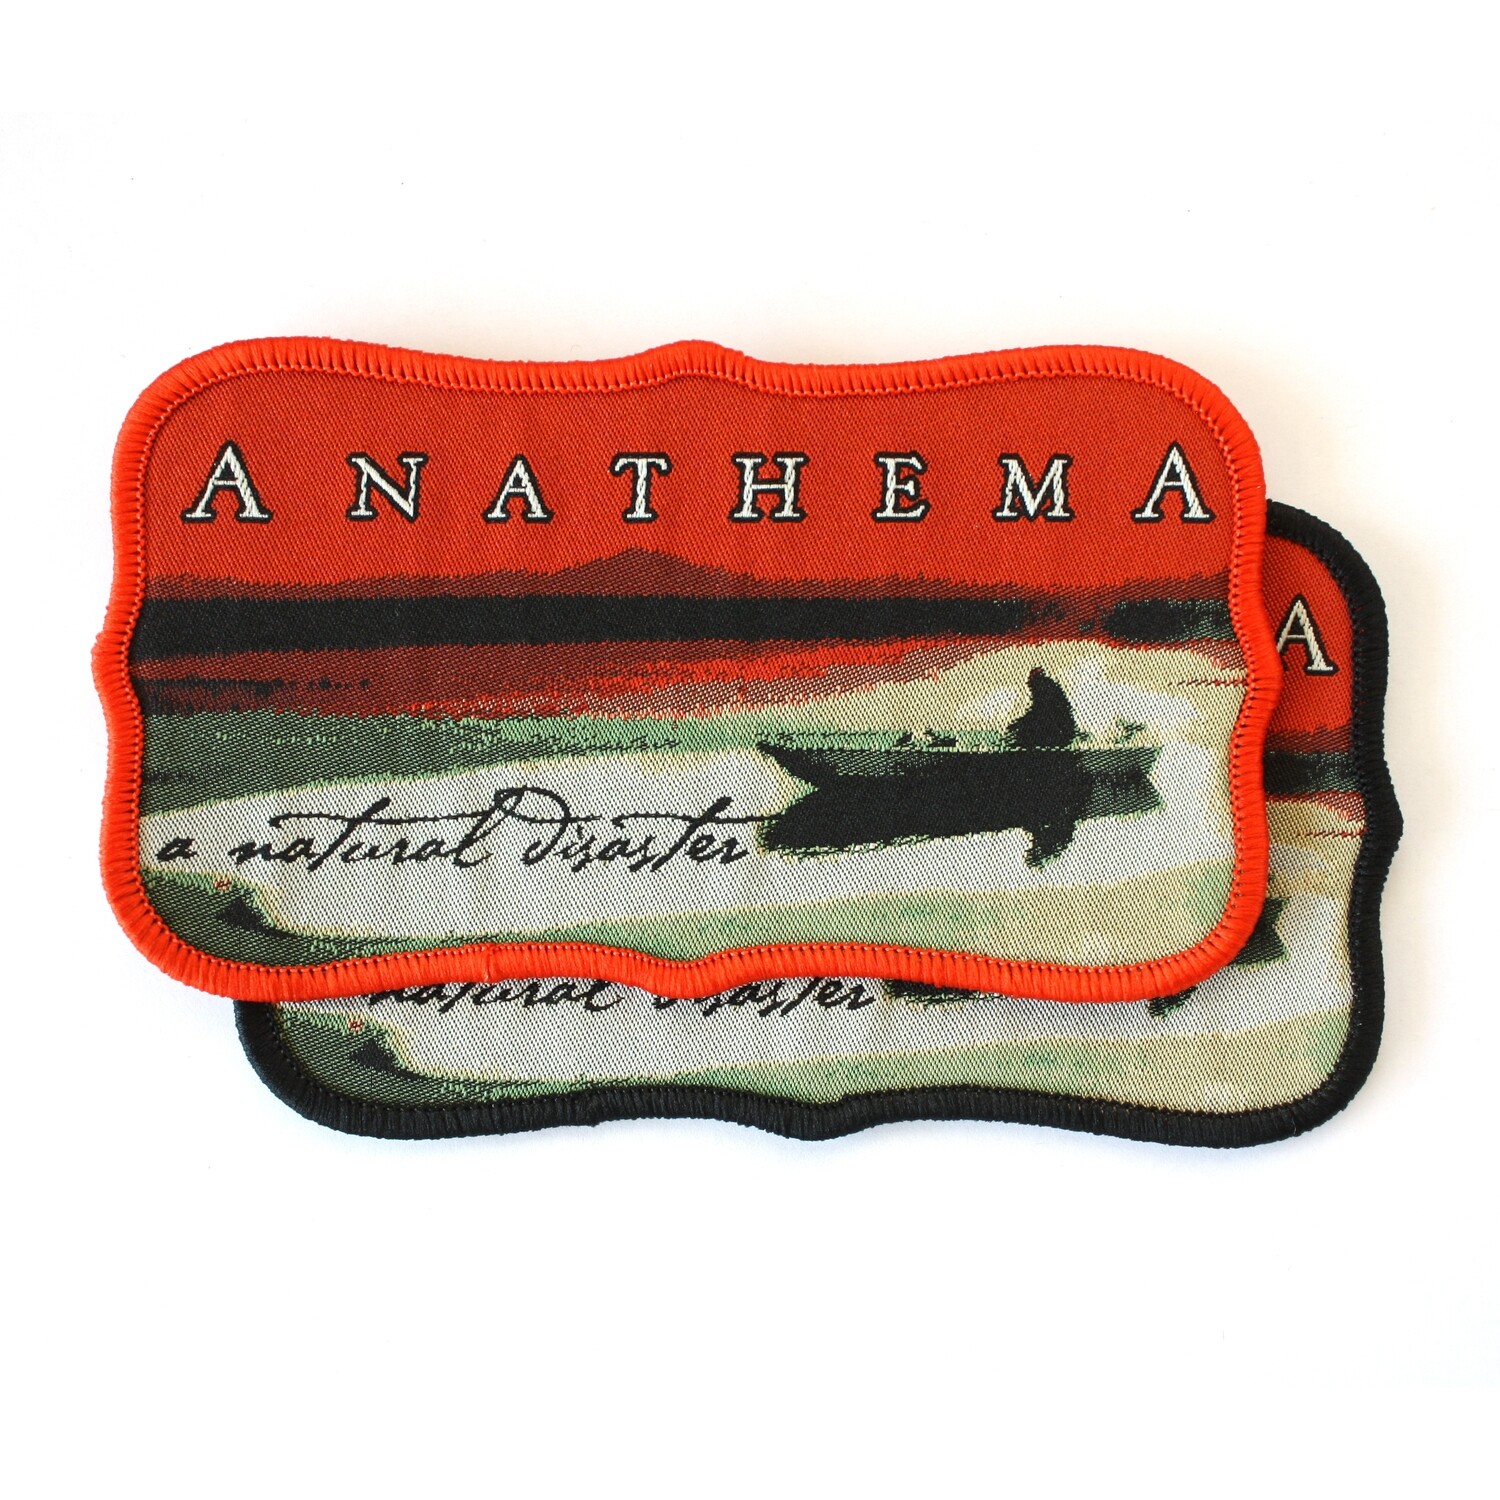 Anathema - A Natural Disaster